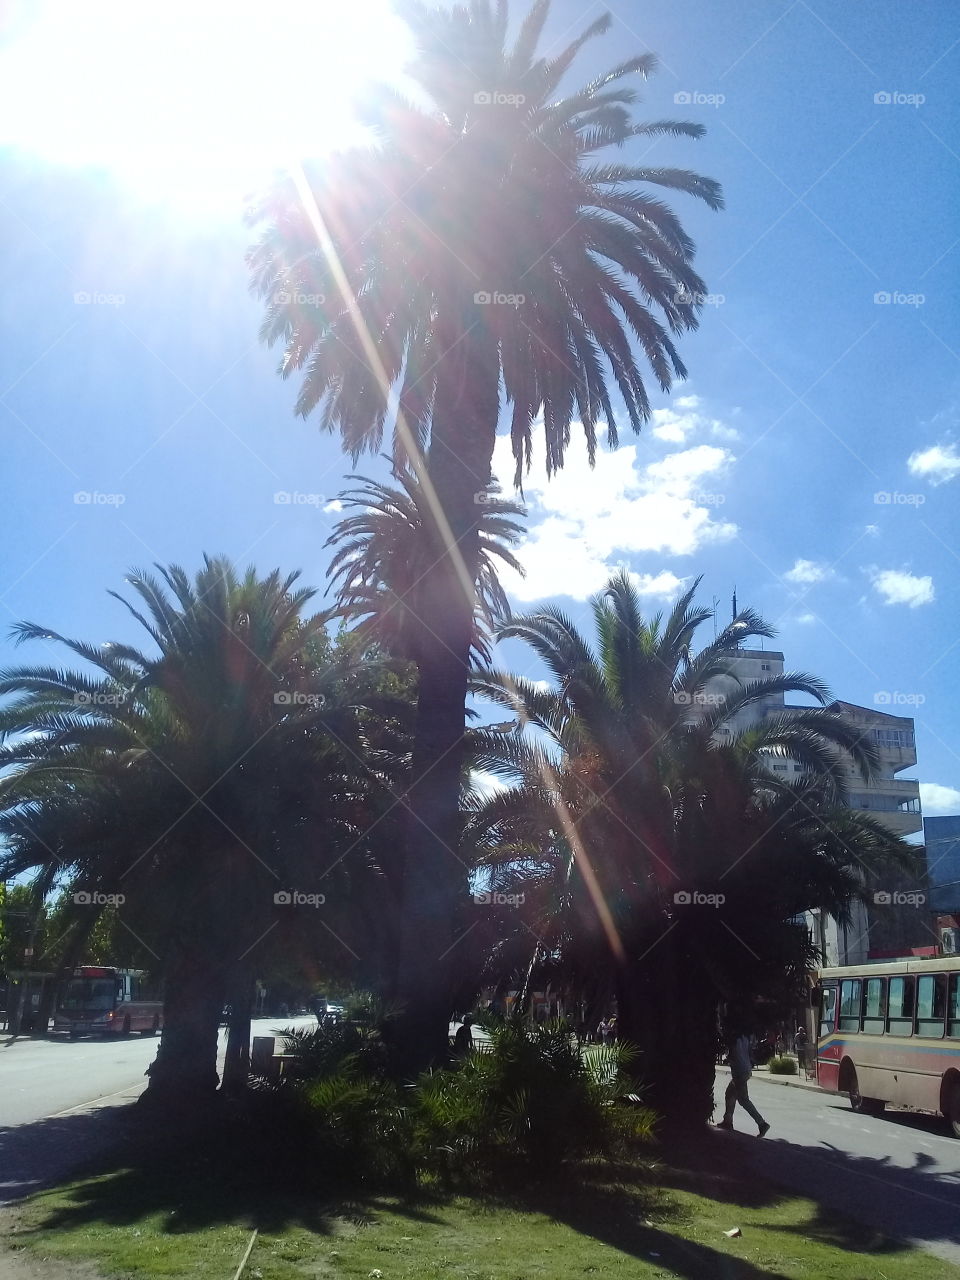 imagen de un conjunto de palmeras cargadas de frutos en una tarde plena de sol en una avenida de pueblo muy transitada.